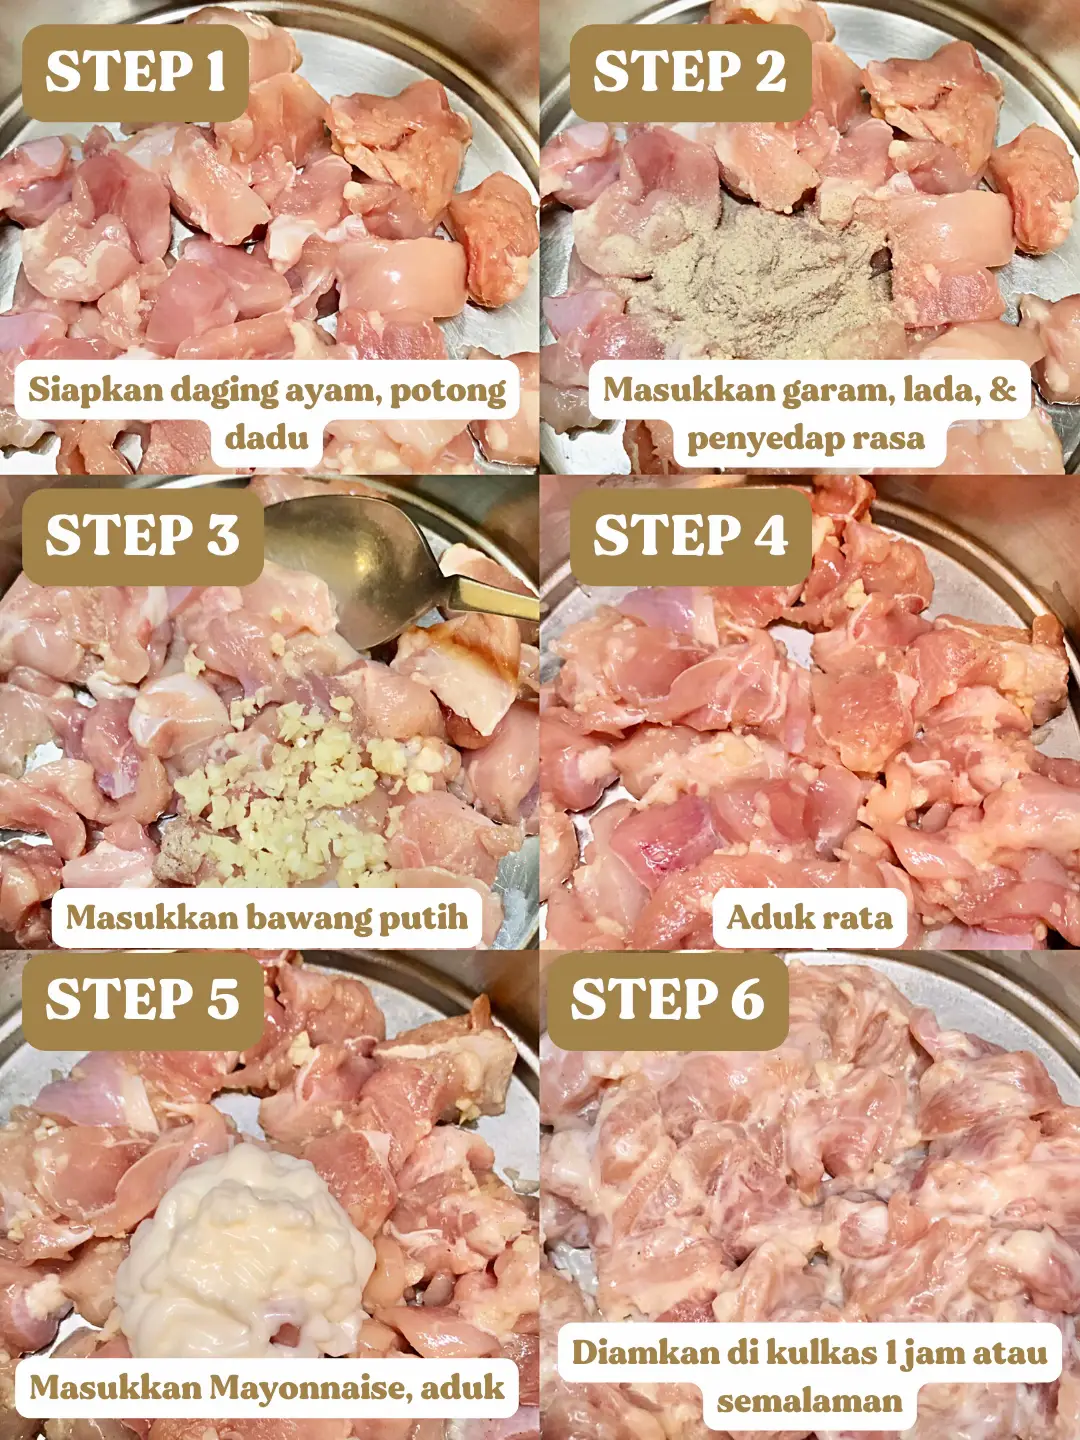 Breaded Chicken Skewers Recipe - Natasha's Kitchen